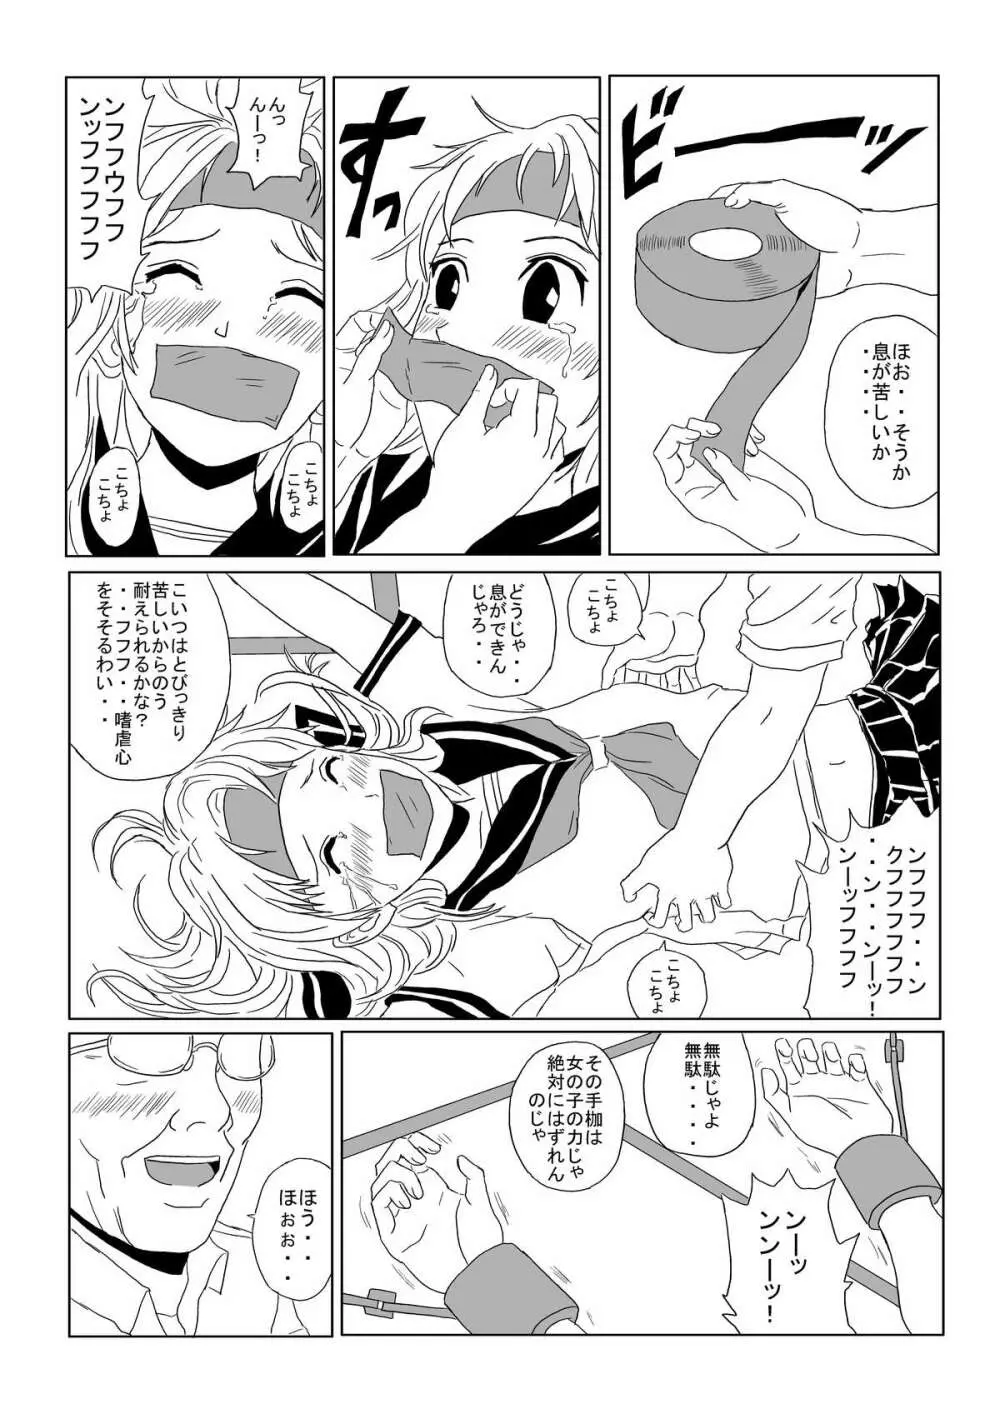 Kusuguri Manga 3 19ページ